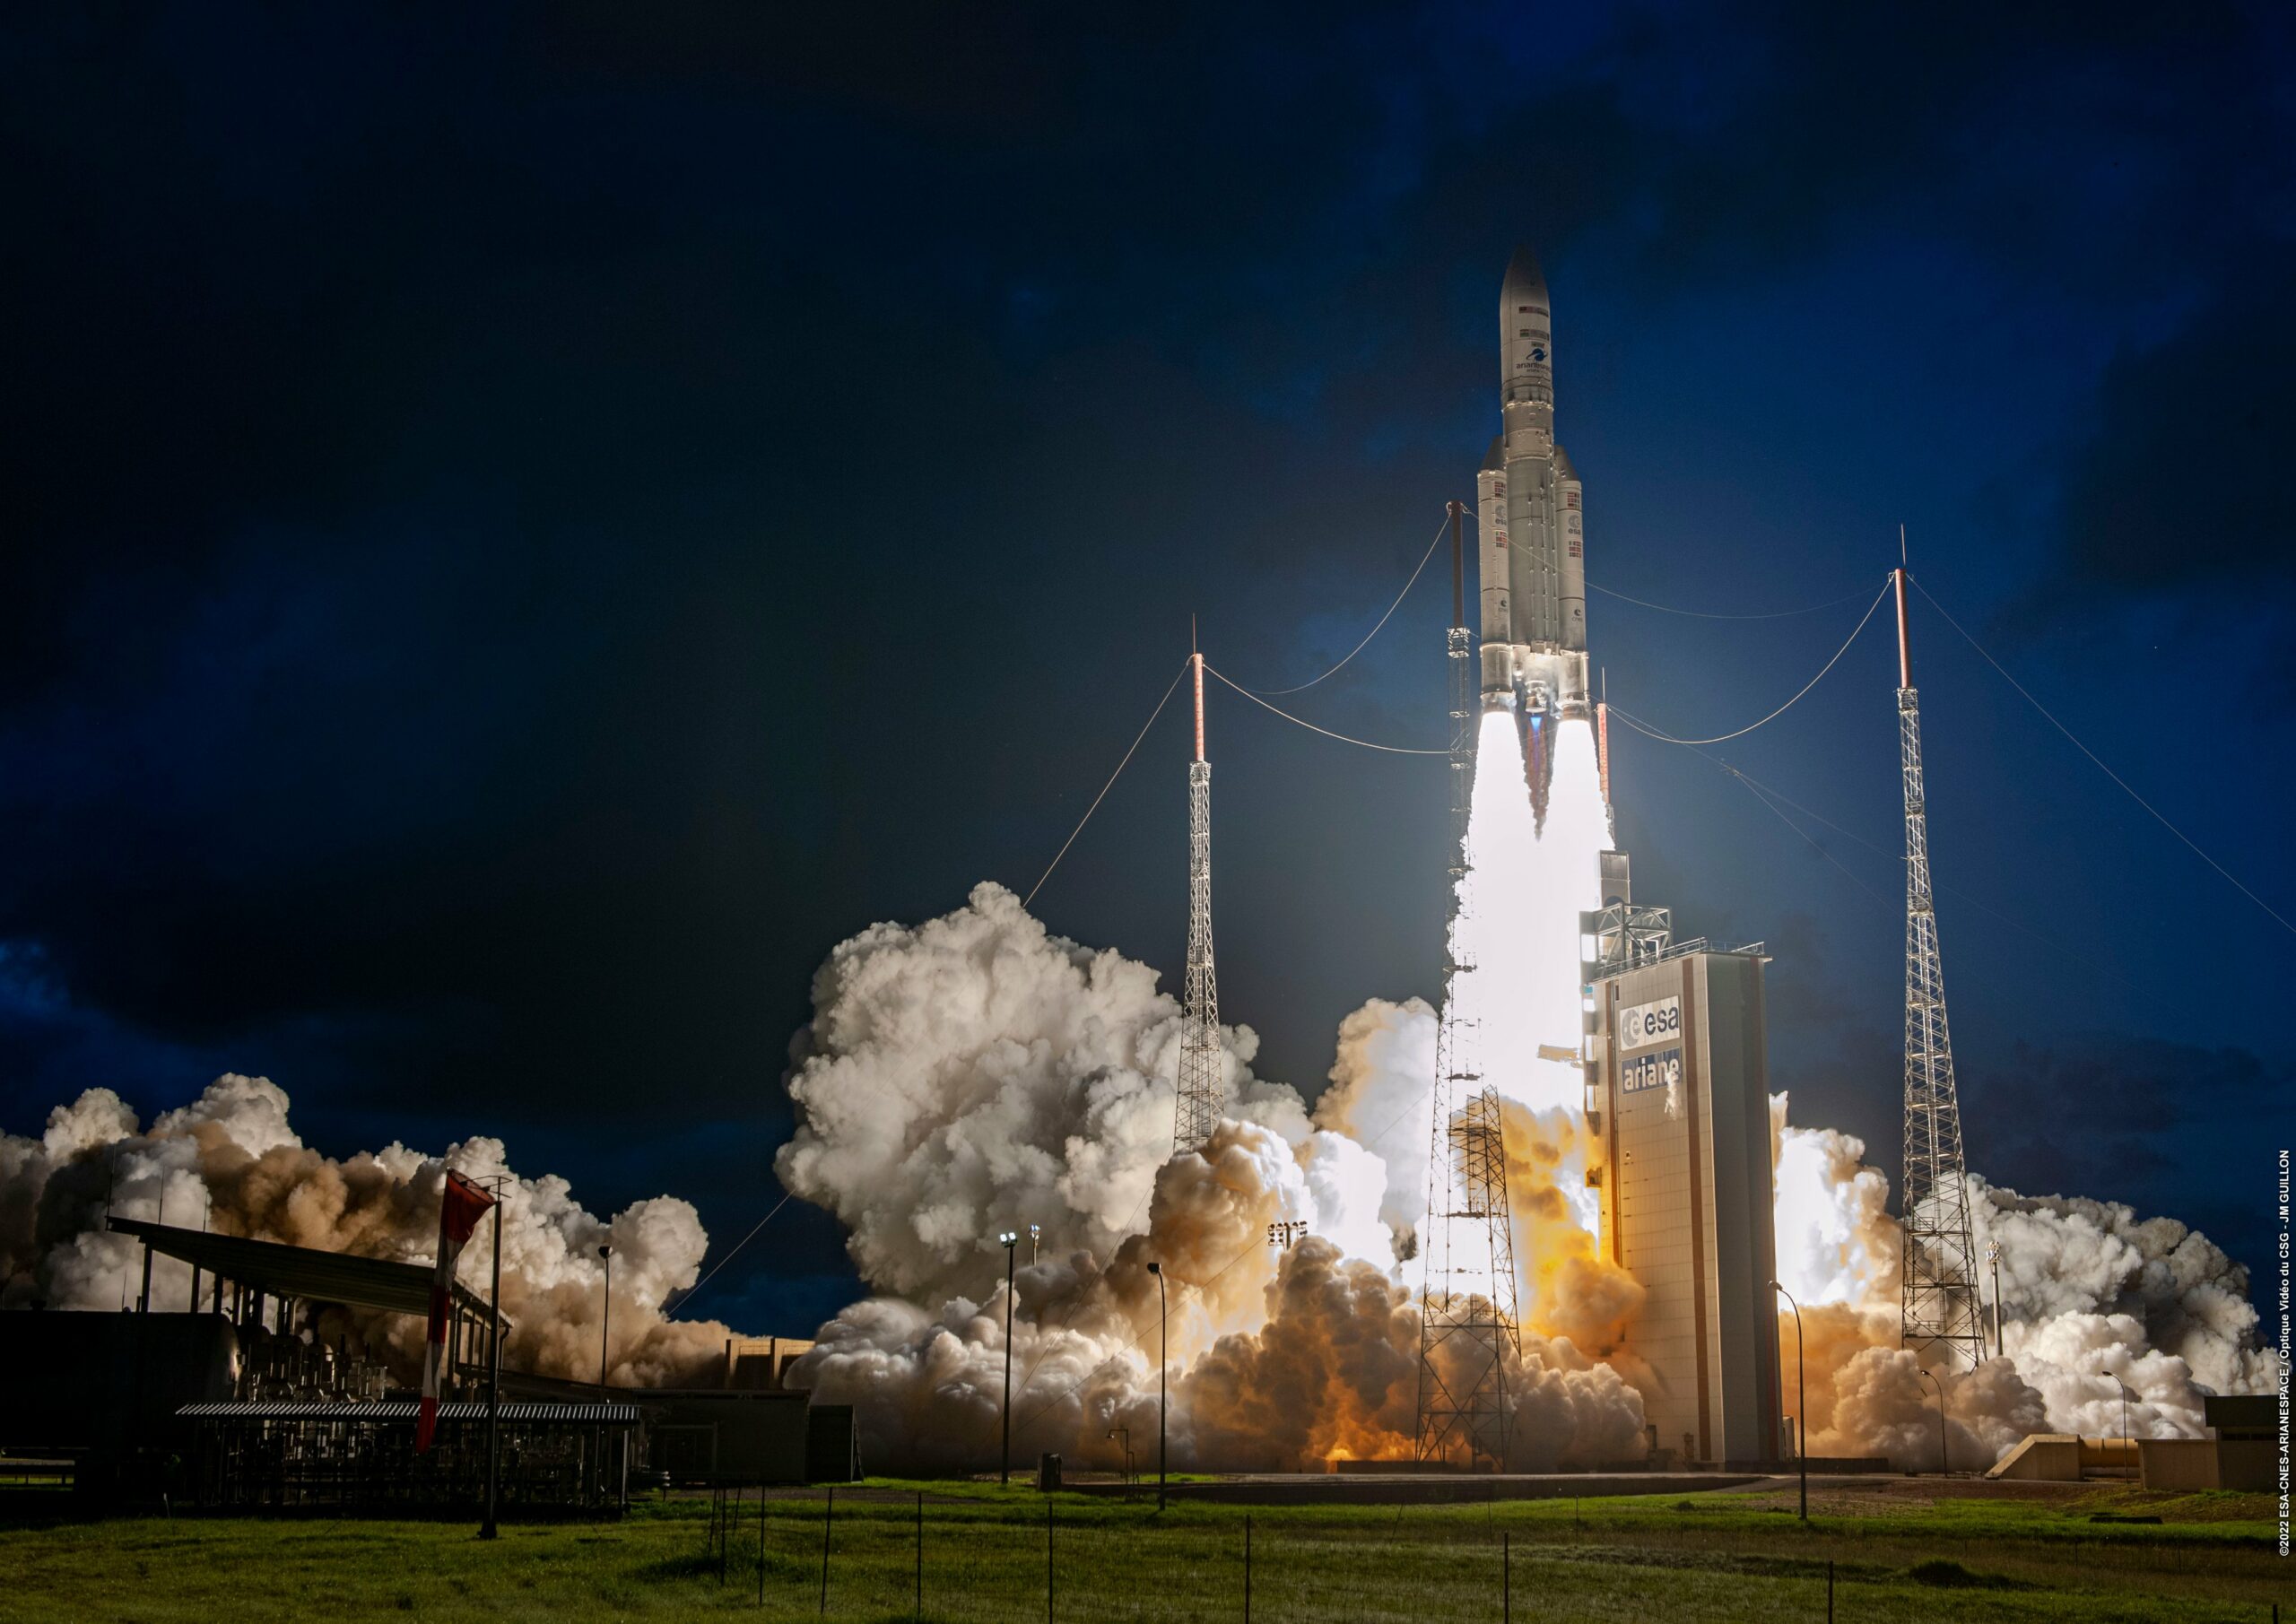 Alemania invierte en el desarrollo del cohete francés Ariane 7 para competir con SpaceX